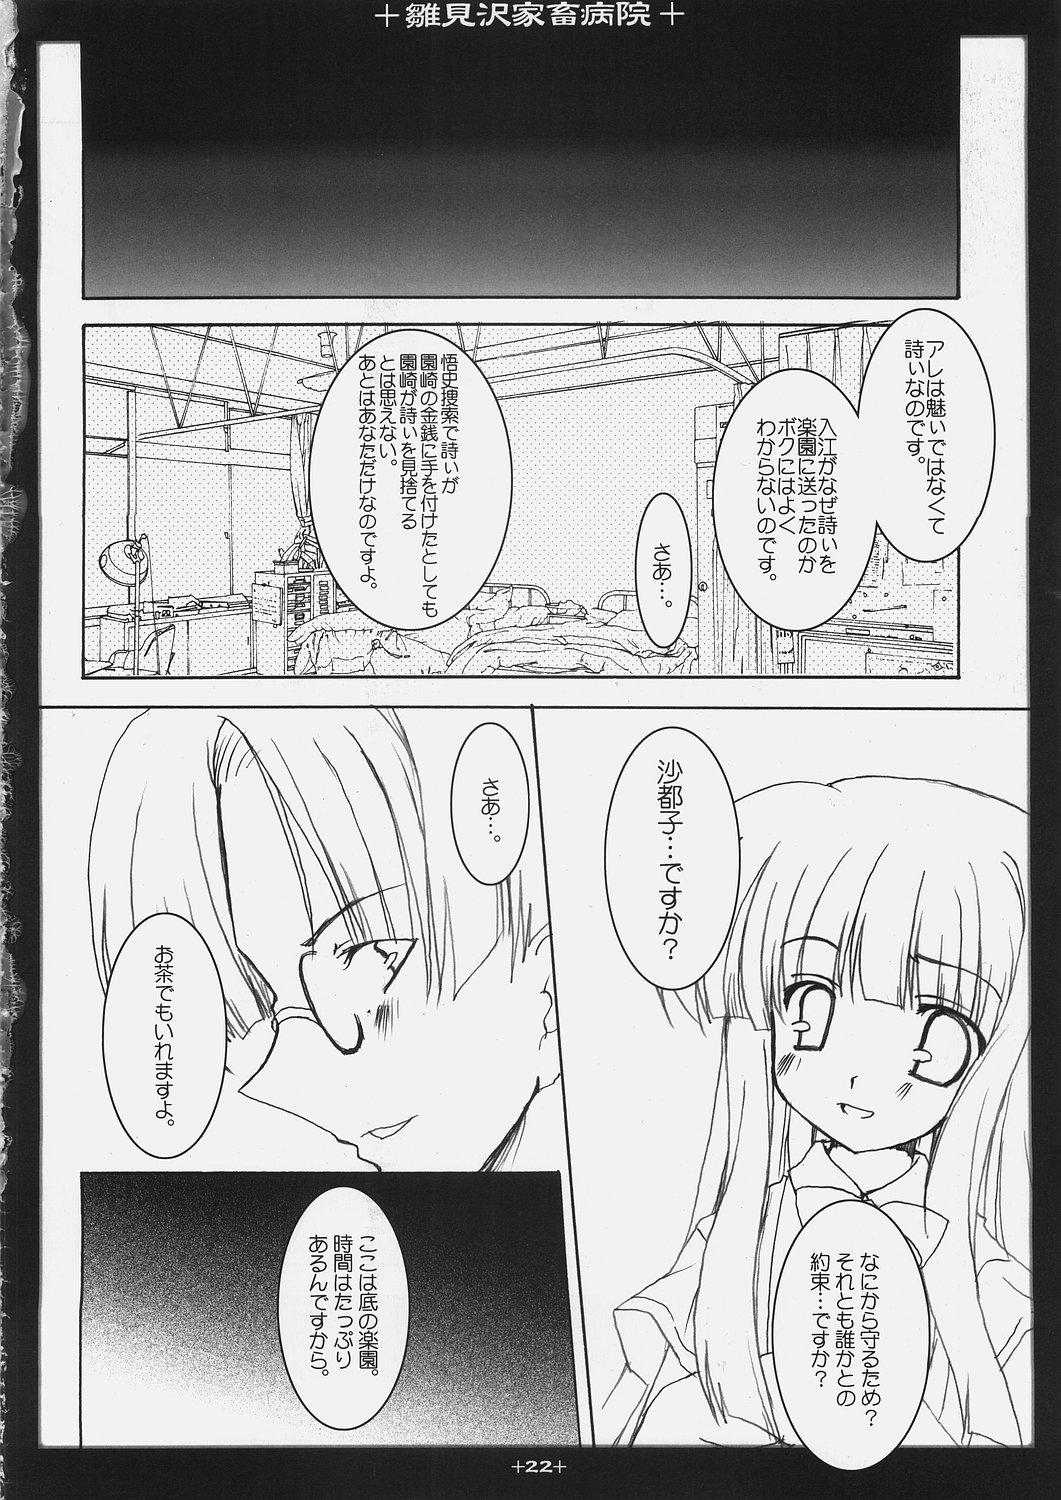 Para Hinamizawa Kachiku Byouin - Higurashi no naku koro ni Gay Physicalexamination - Page 21